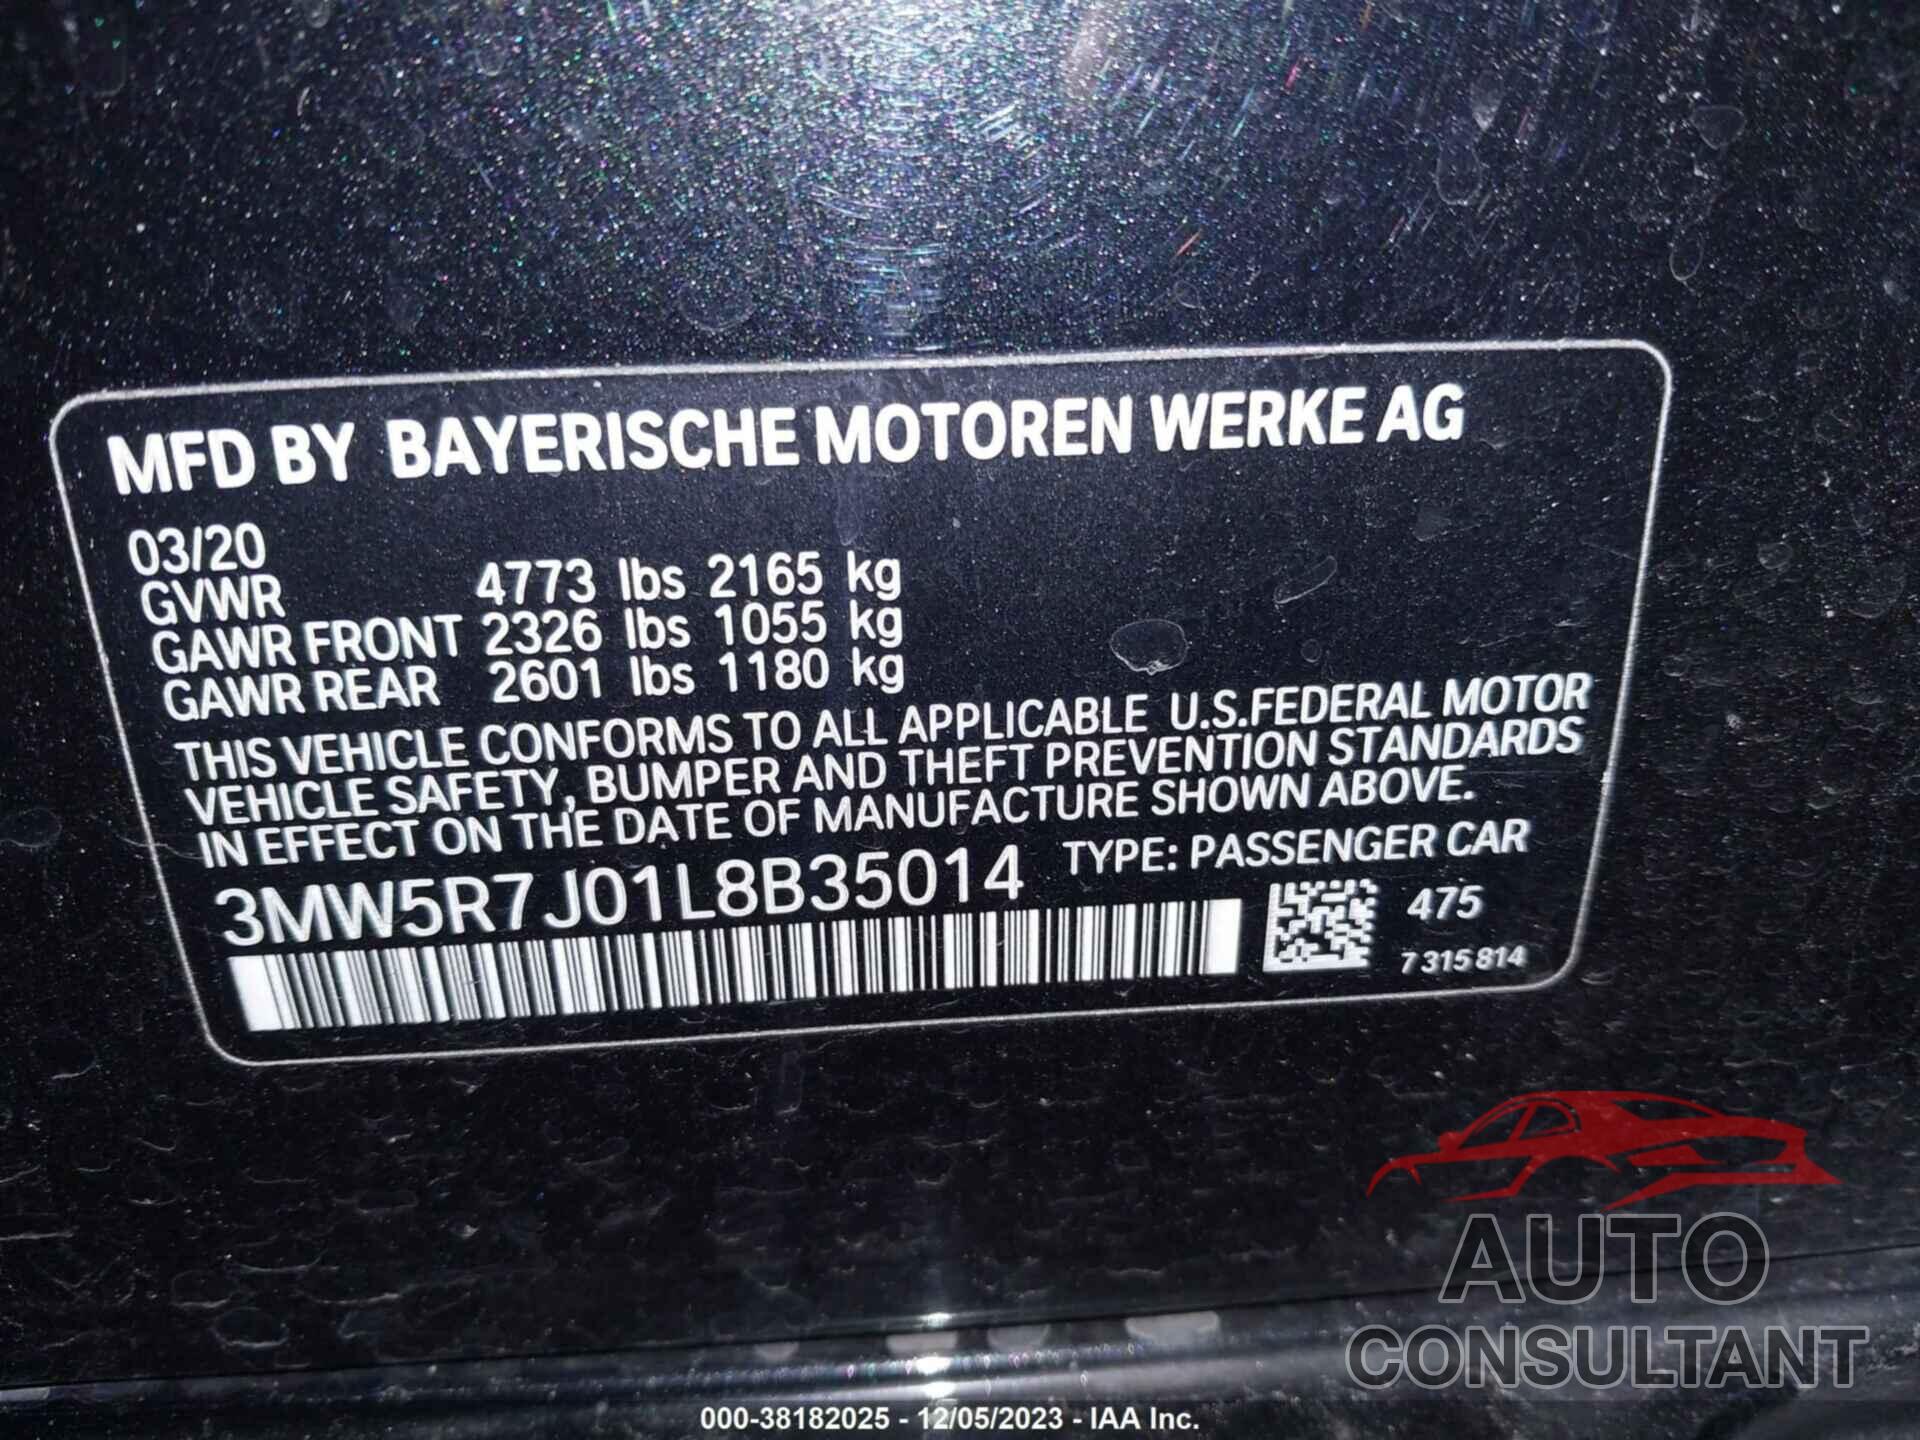 BMW 330XI 2020 - 3MW5R7J01L8B35014